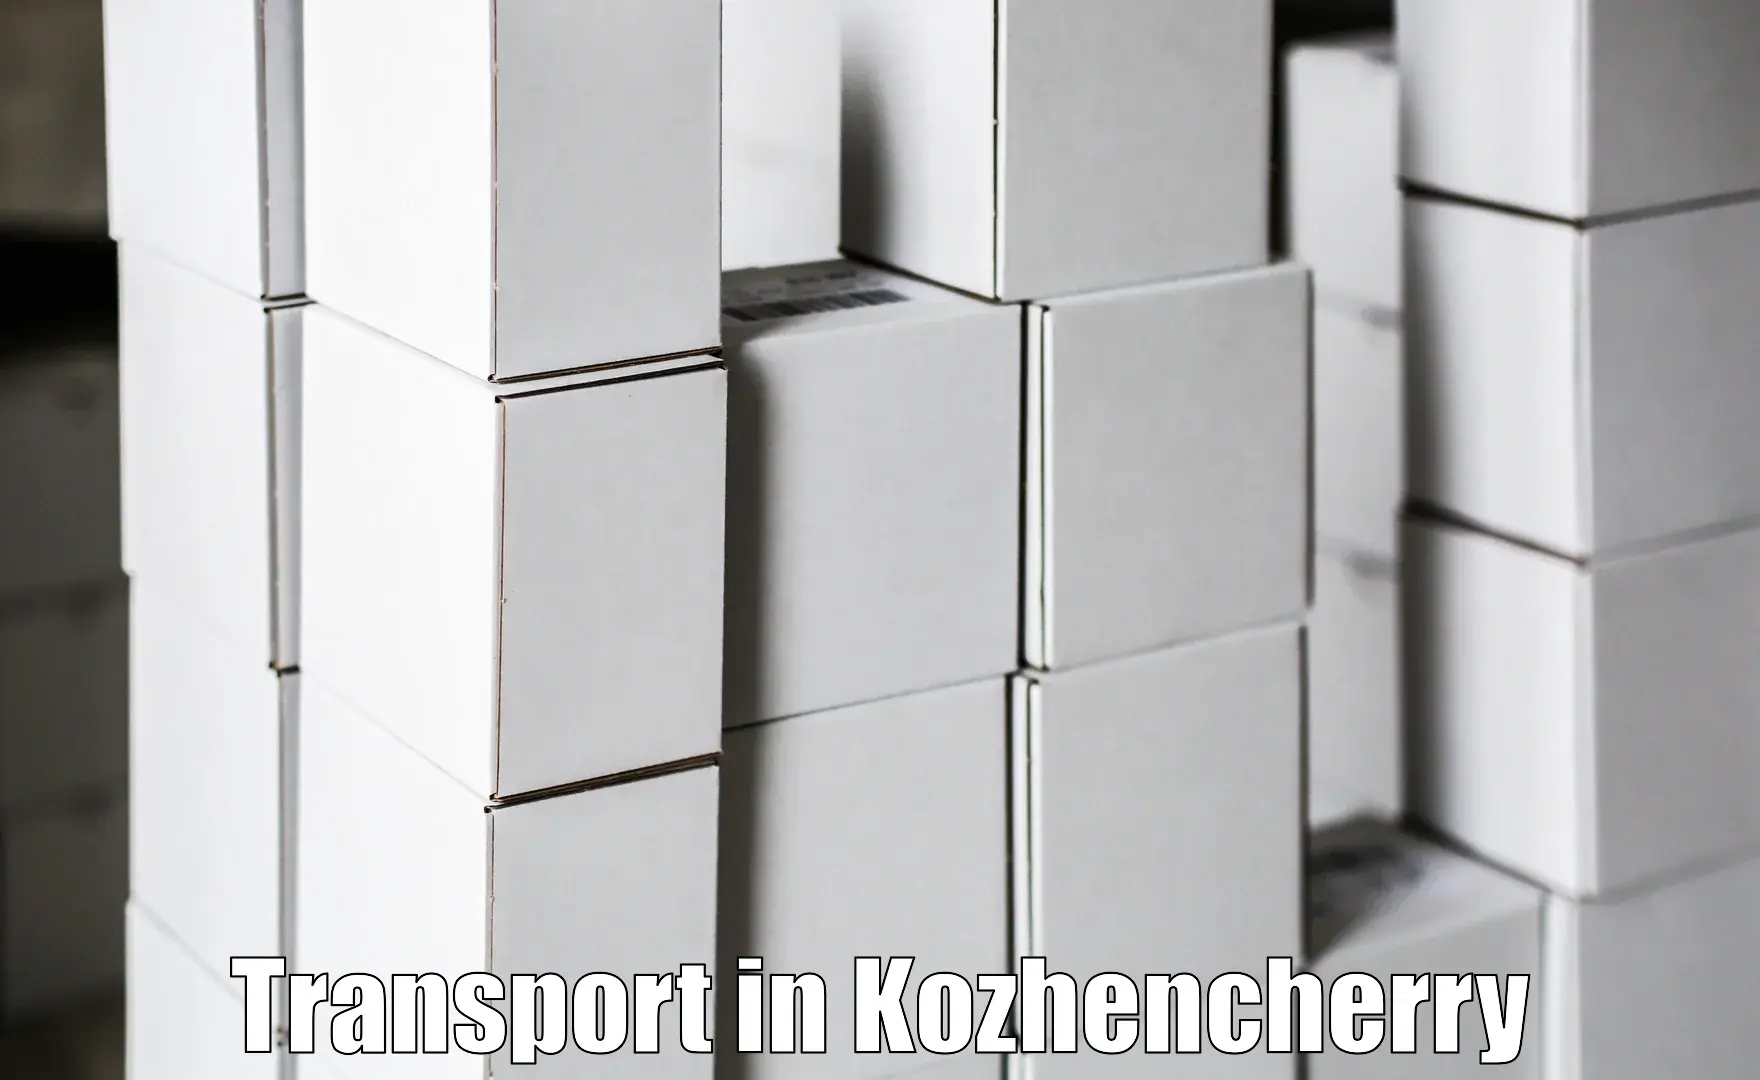 Interstate transport services in Kozhencherry